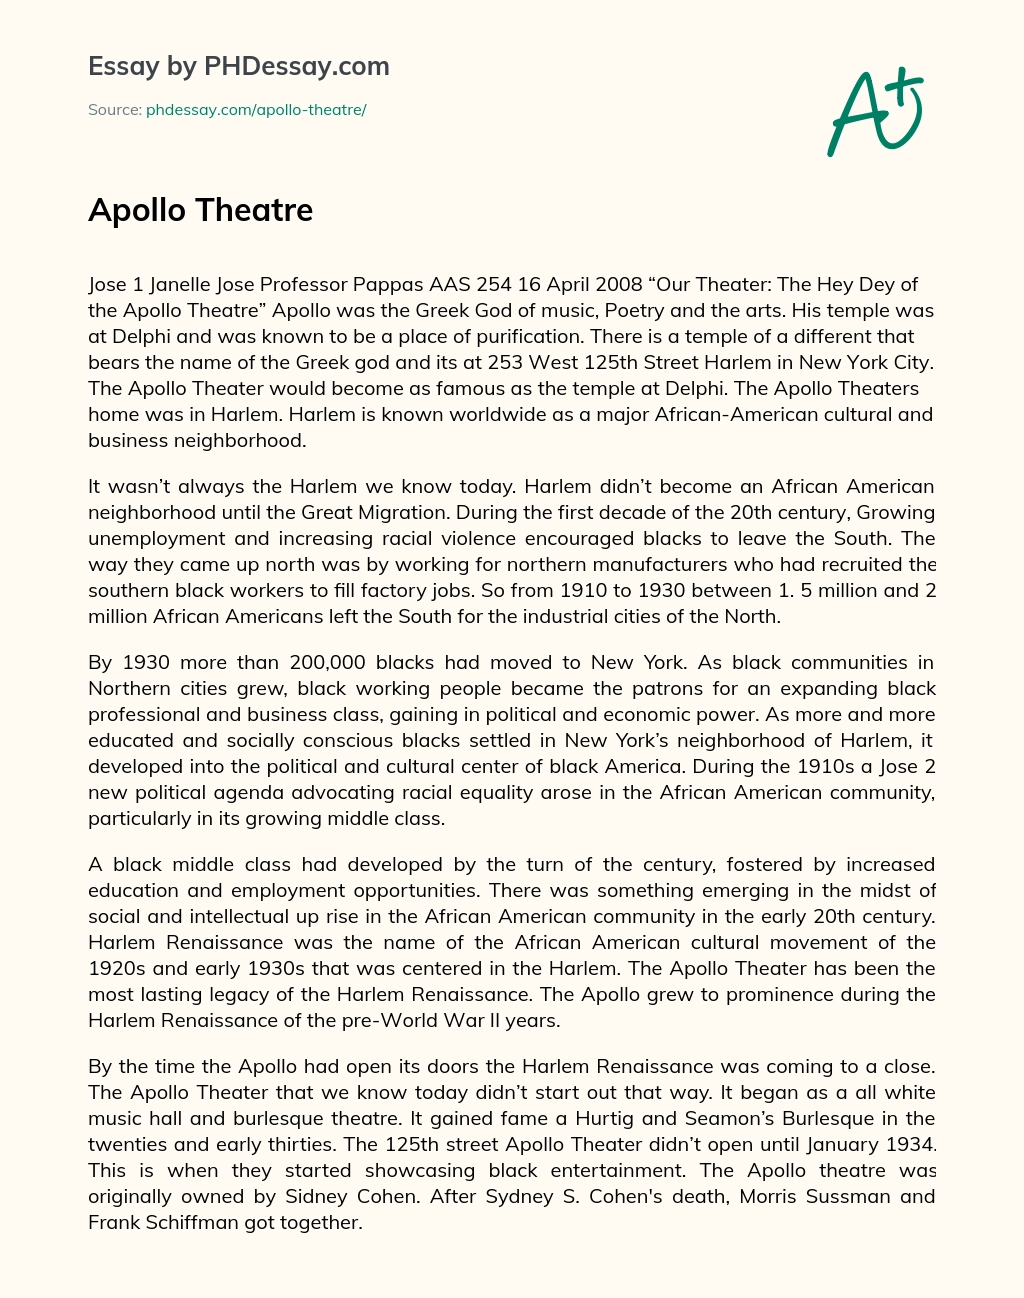 Apollo Theatre essay